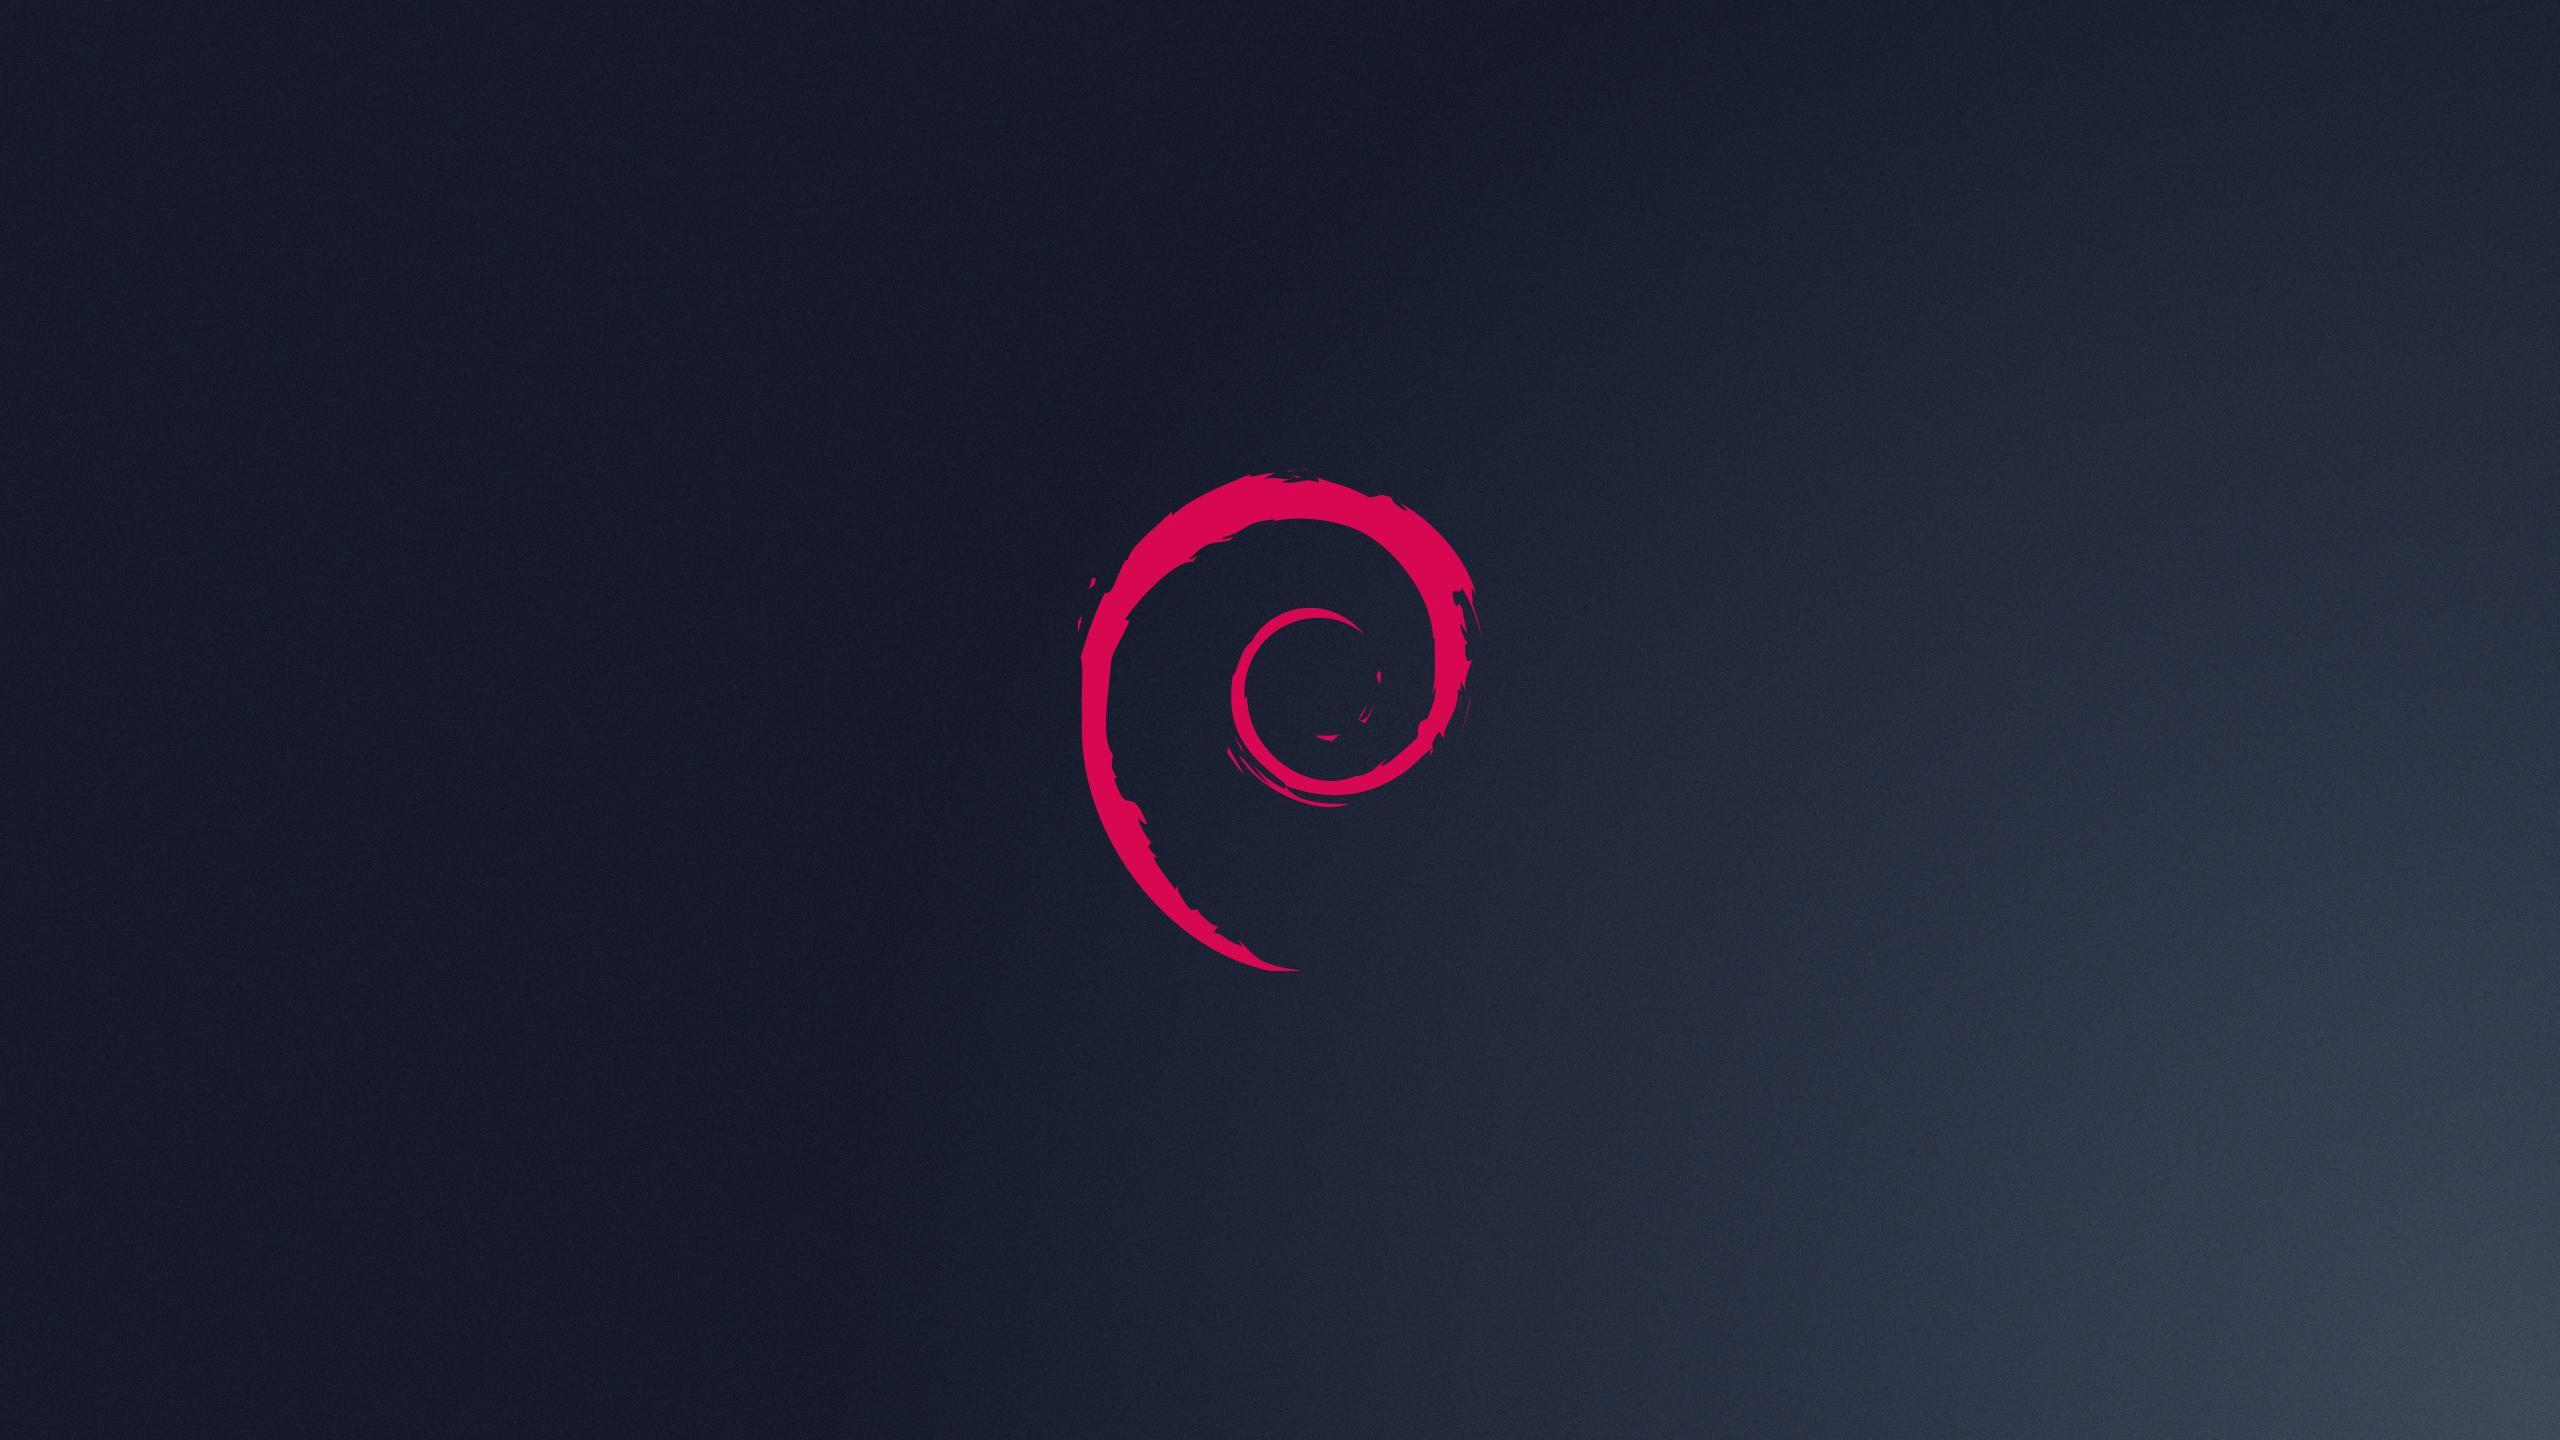 Debian Wallpaper. Linux Wallpaper #